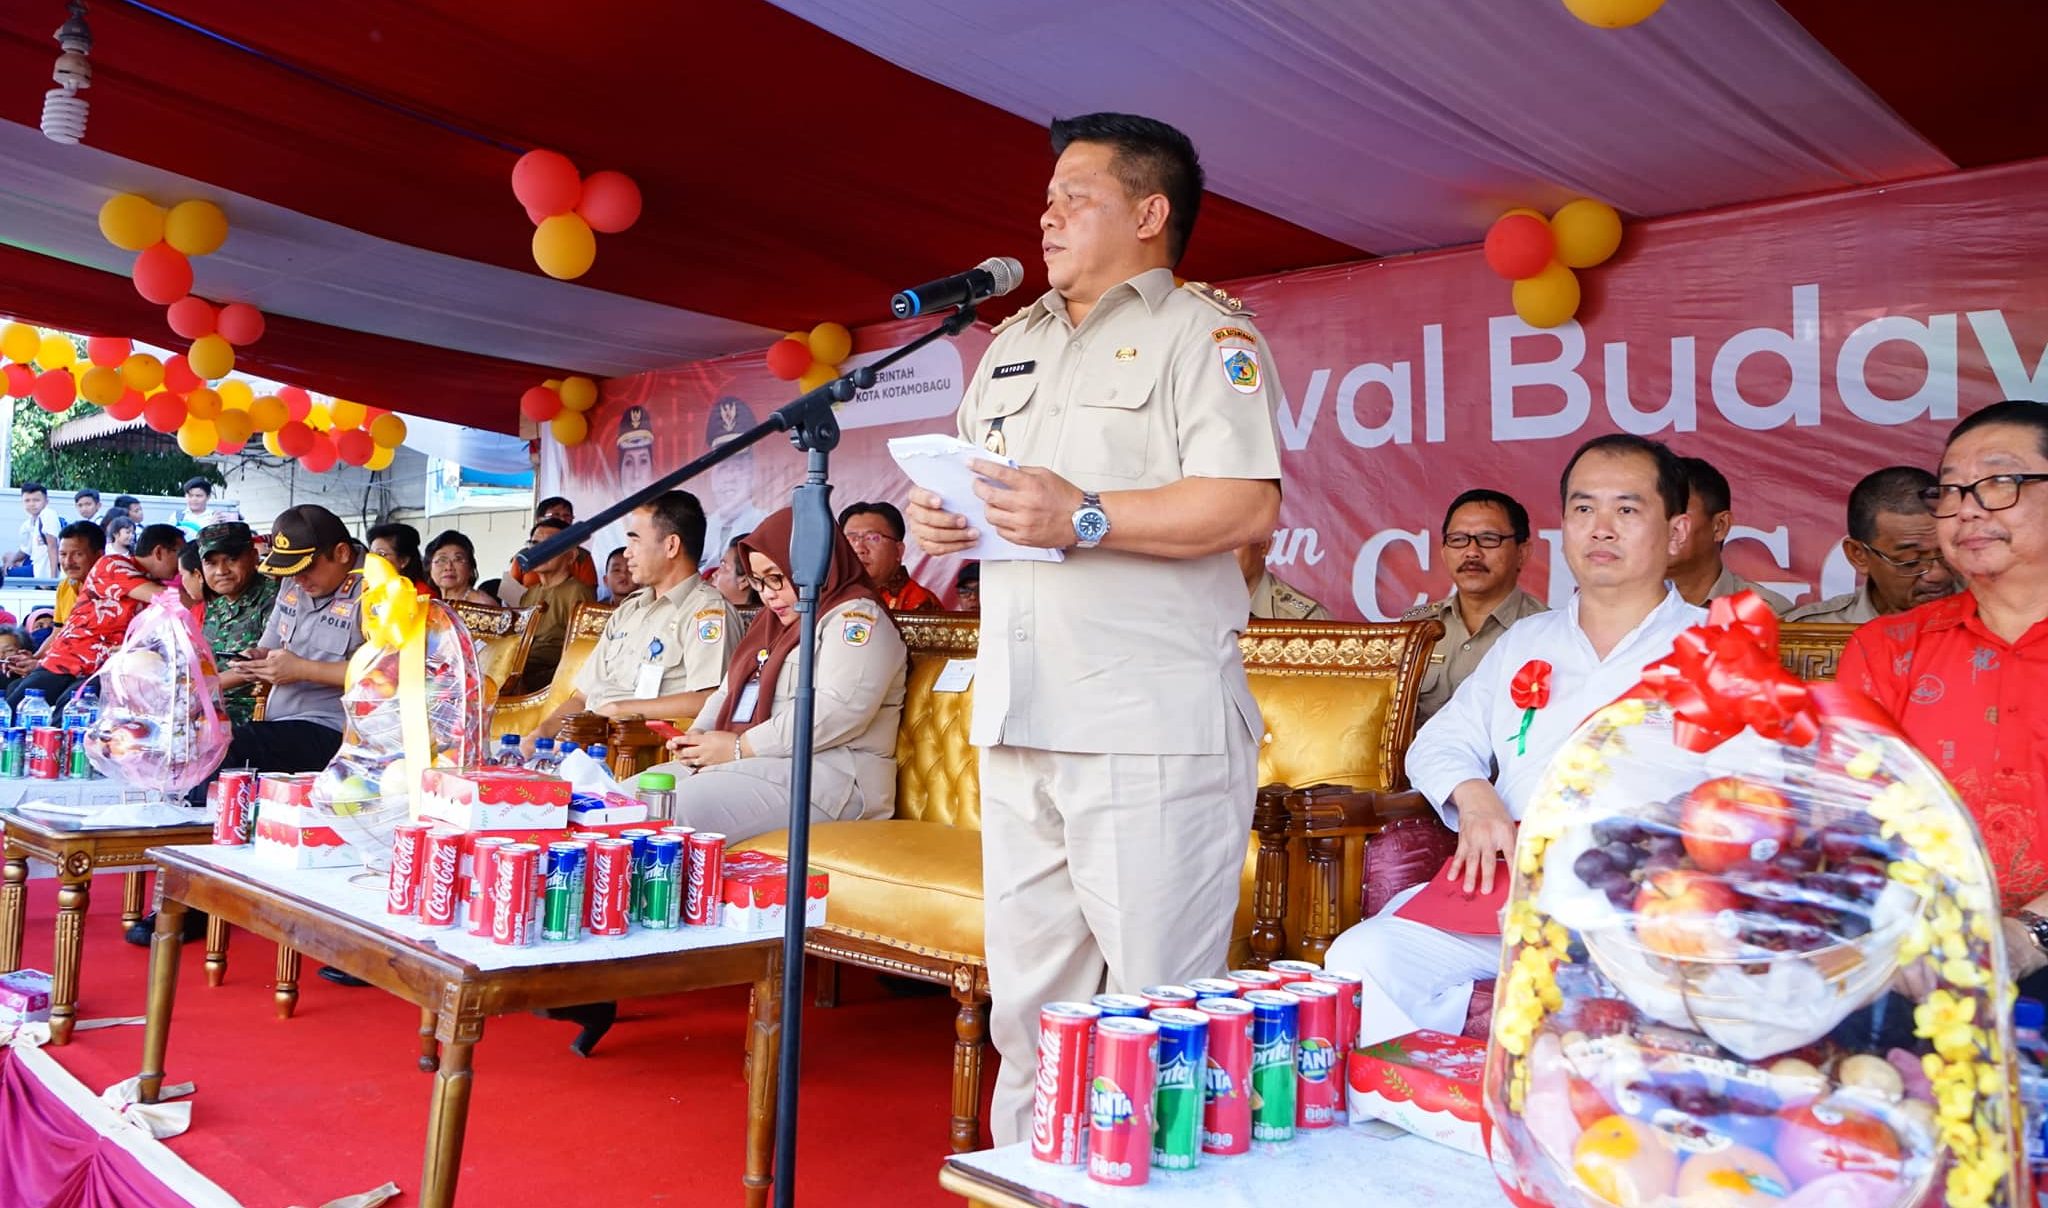 Dilepas Wakil Walikota, Perayaan Karnaval Budaya dan Cap Go Meh di Kotamobagu Meriah